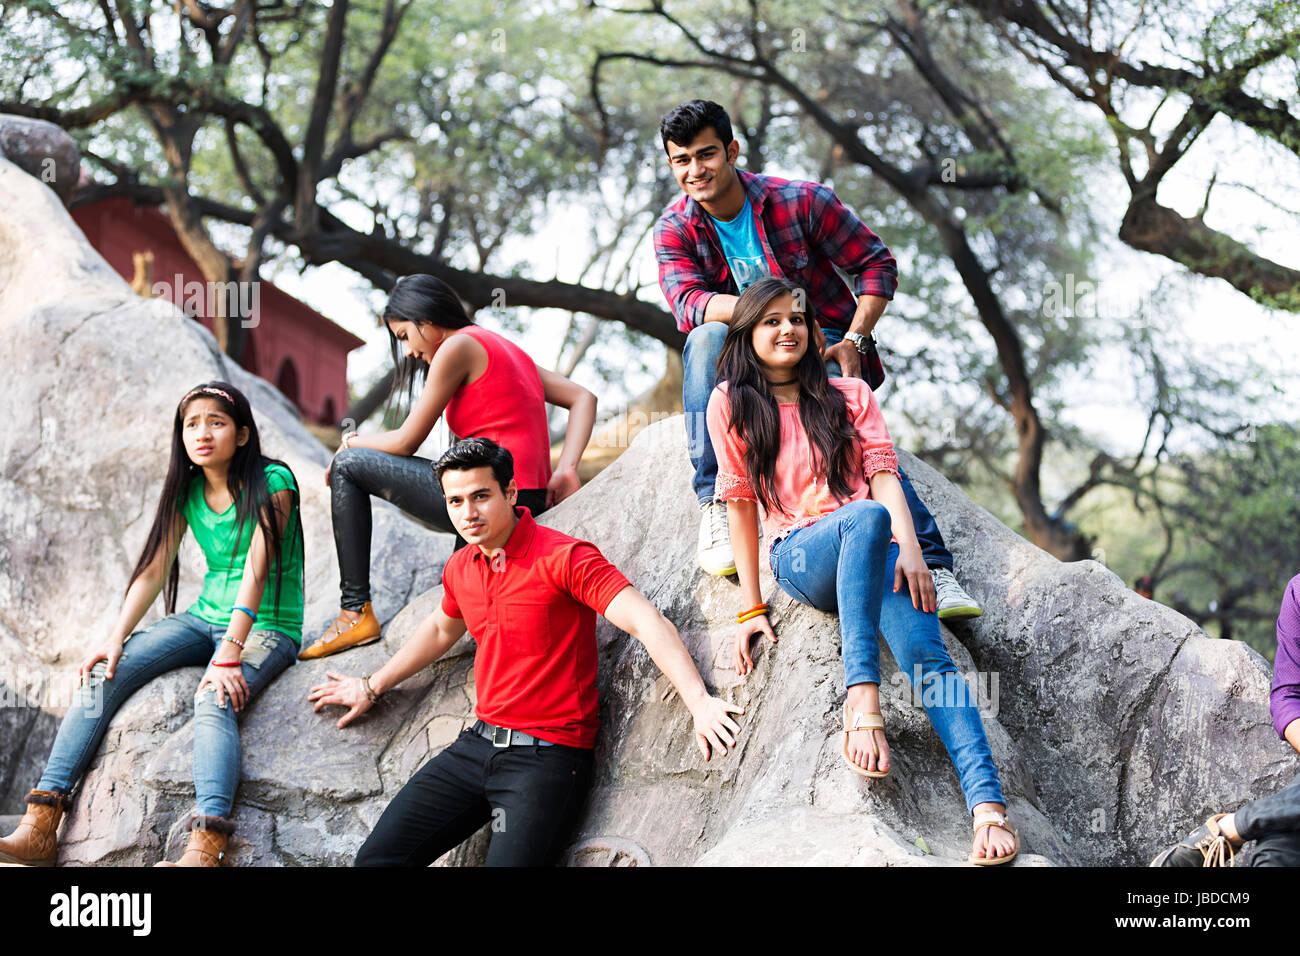 Glückliche Gruppe Teenager Jungen Mädchen Freunde sitzen Rock genießen Surajkund Stockfoto